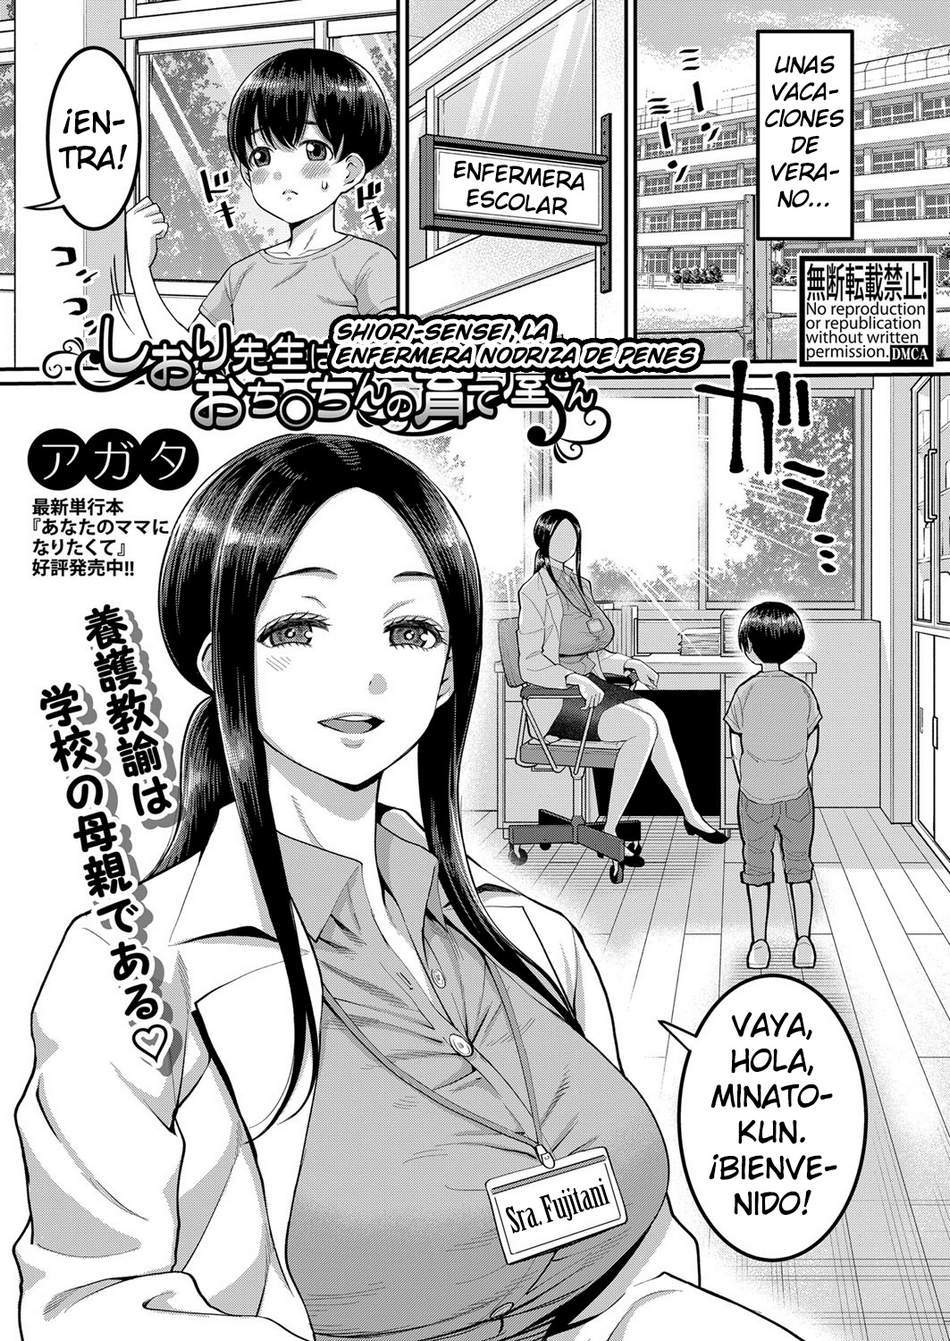 Shiori-Sensei, la enfermera nodriza de penes - Page #1